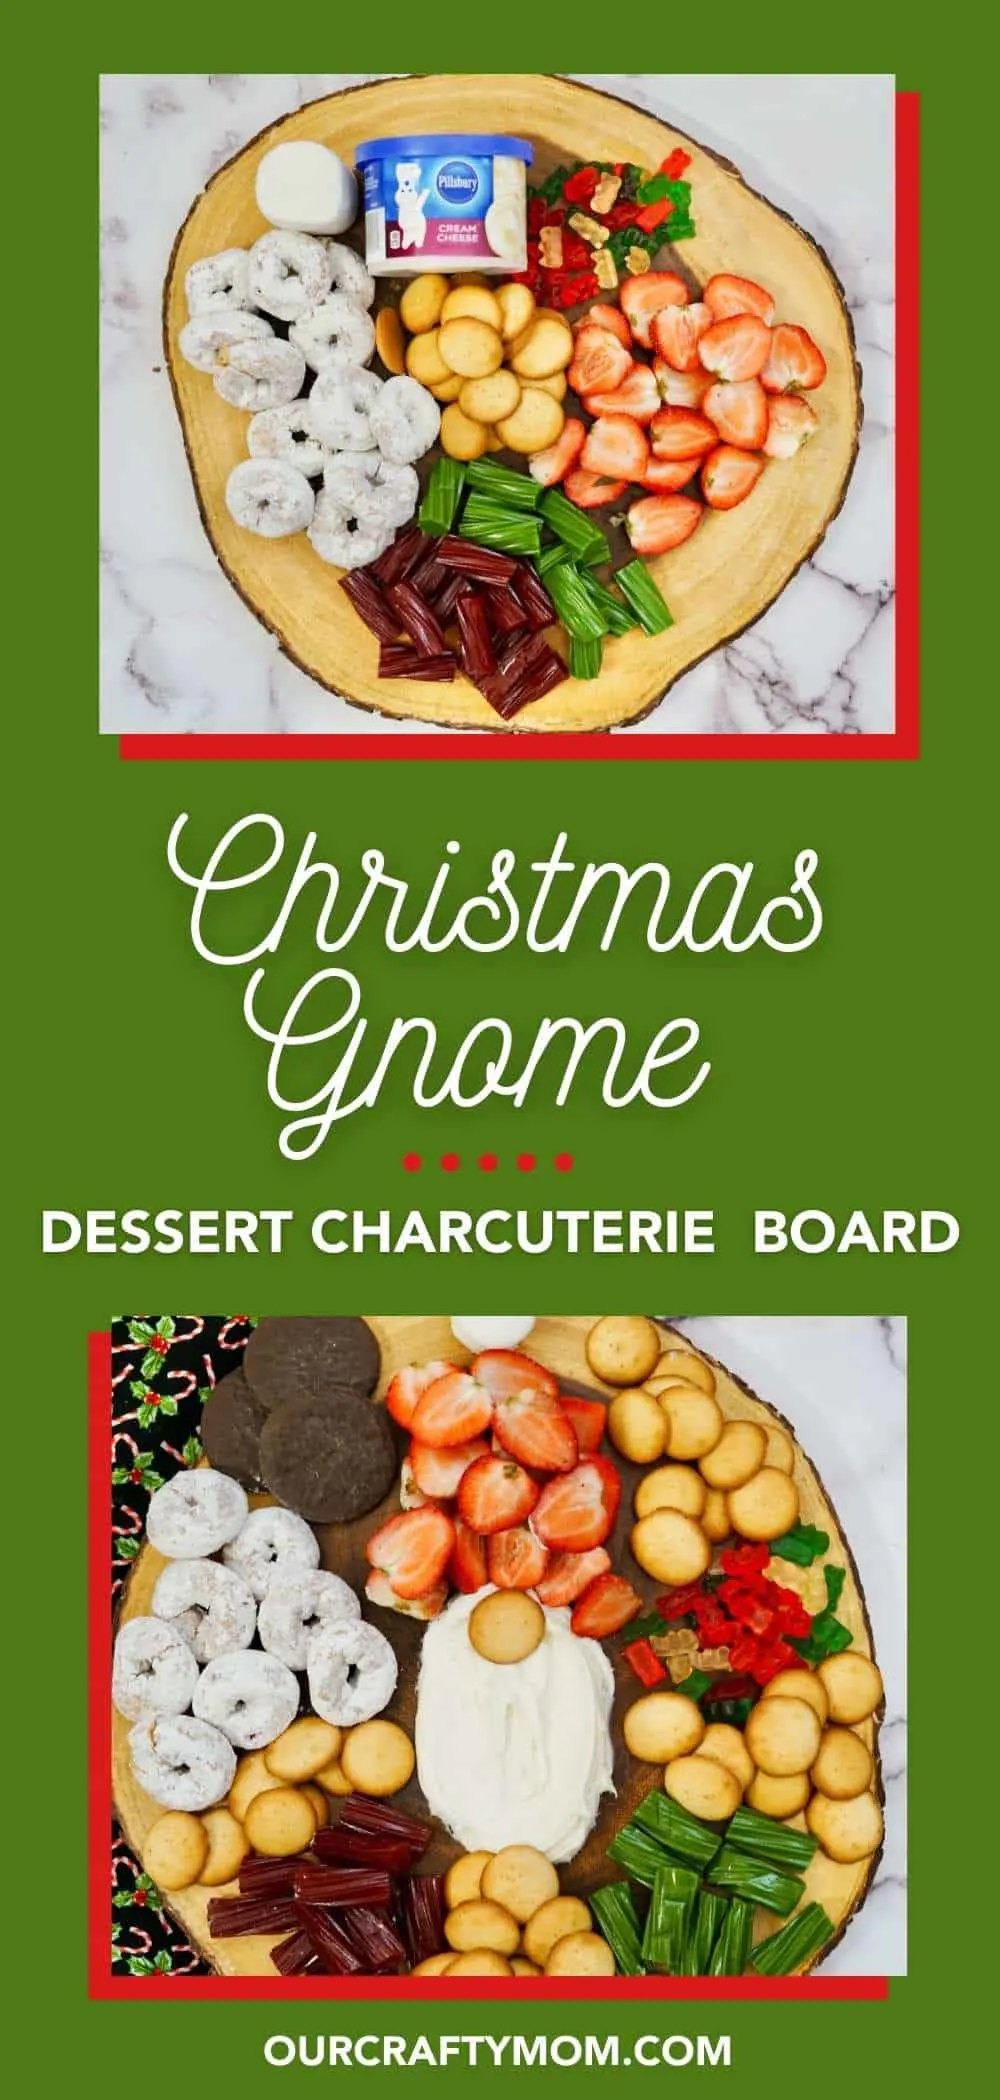 Christmas gnome dessert charcuterie board